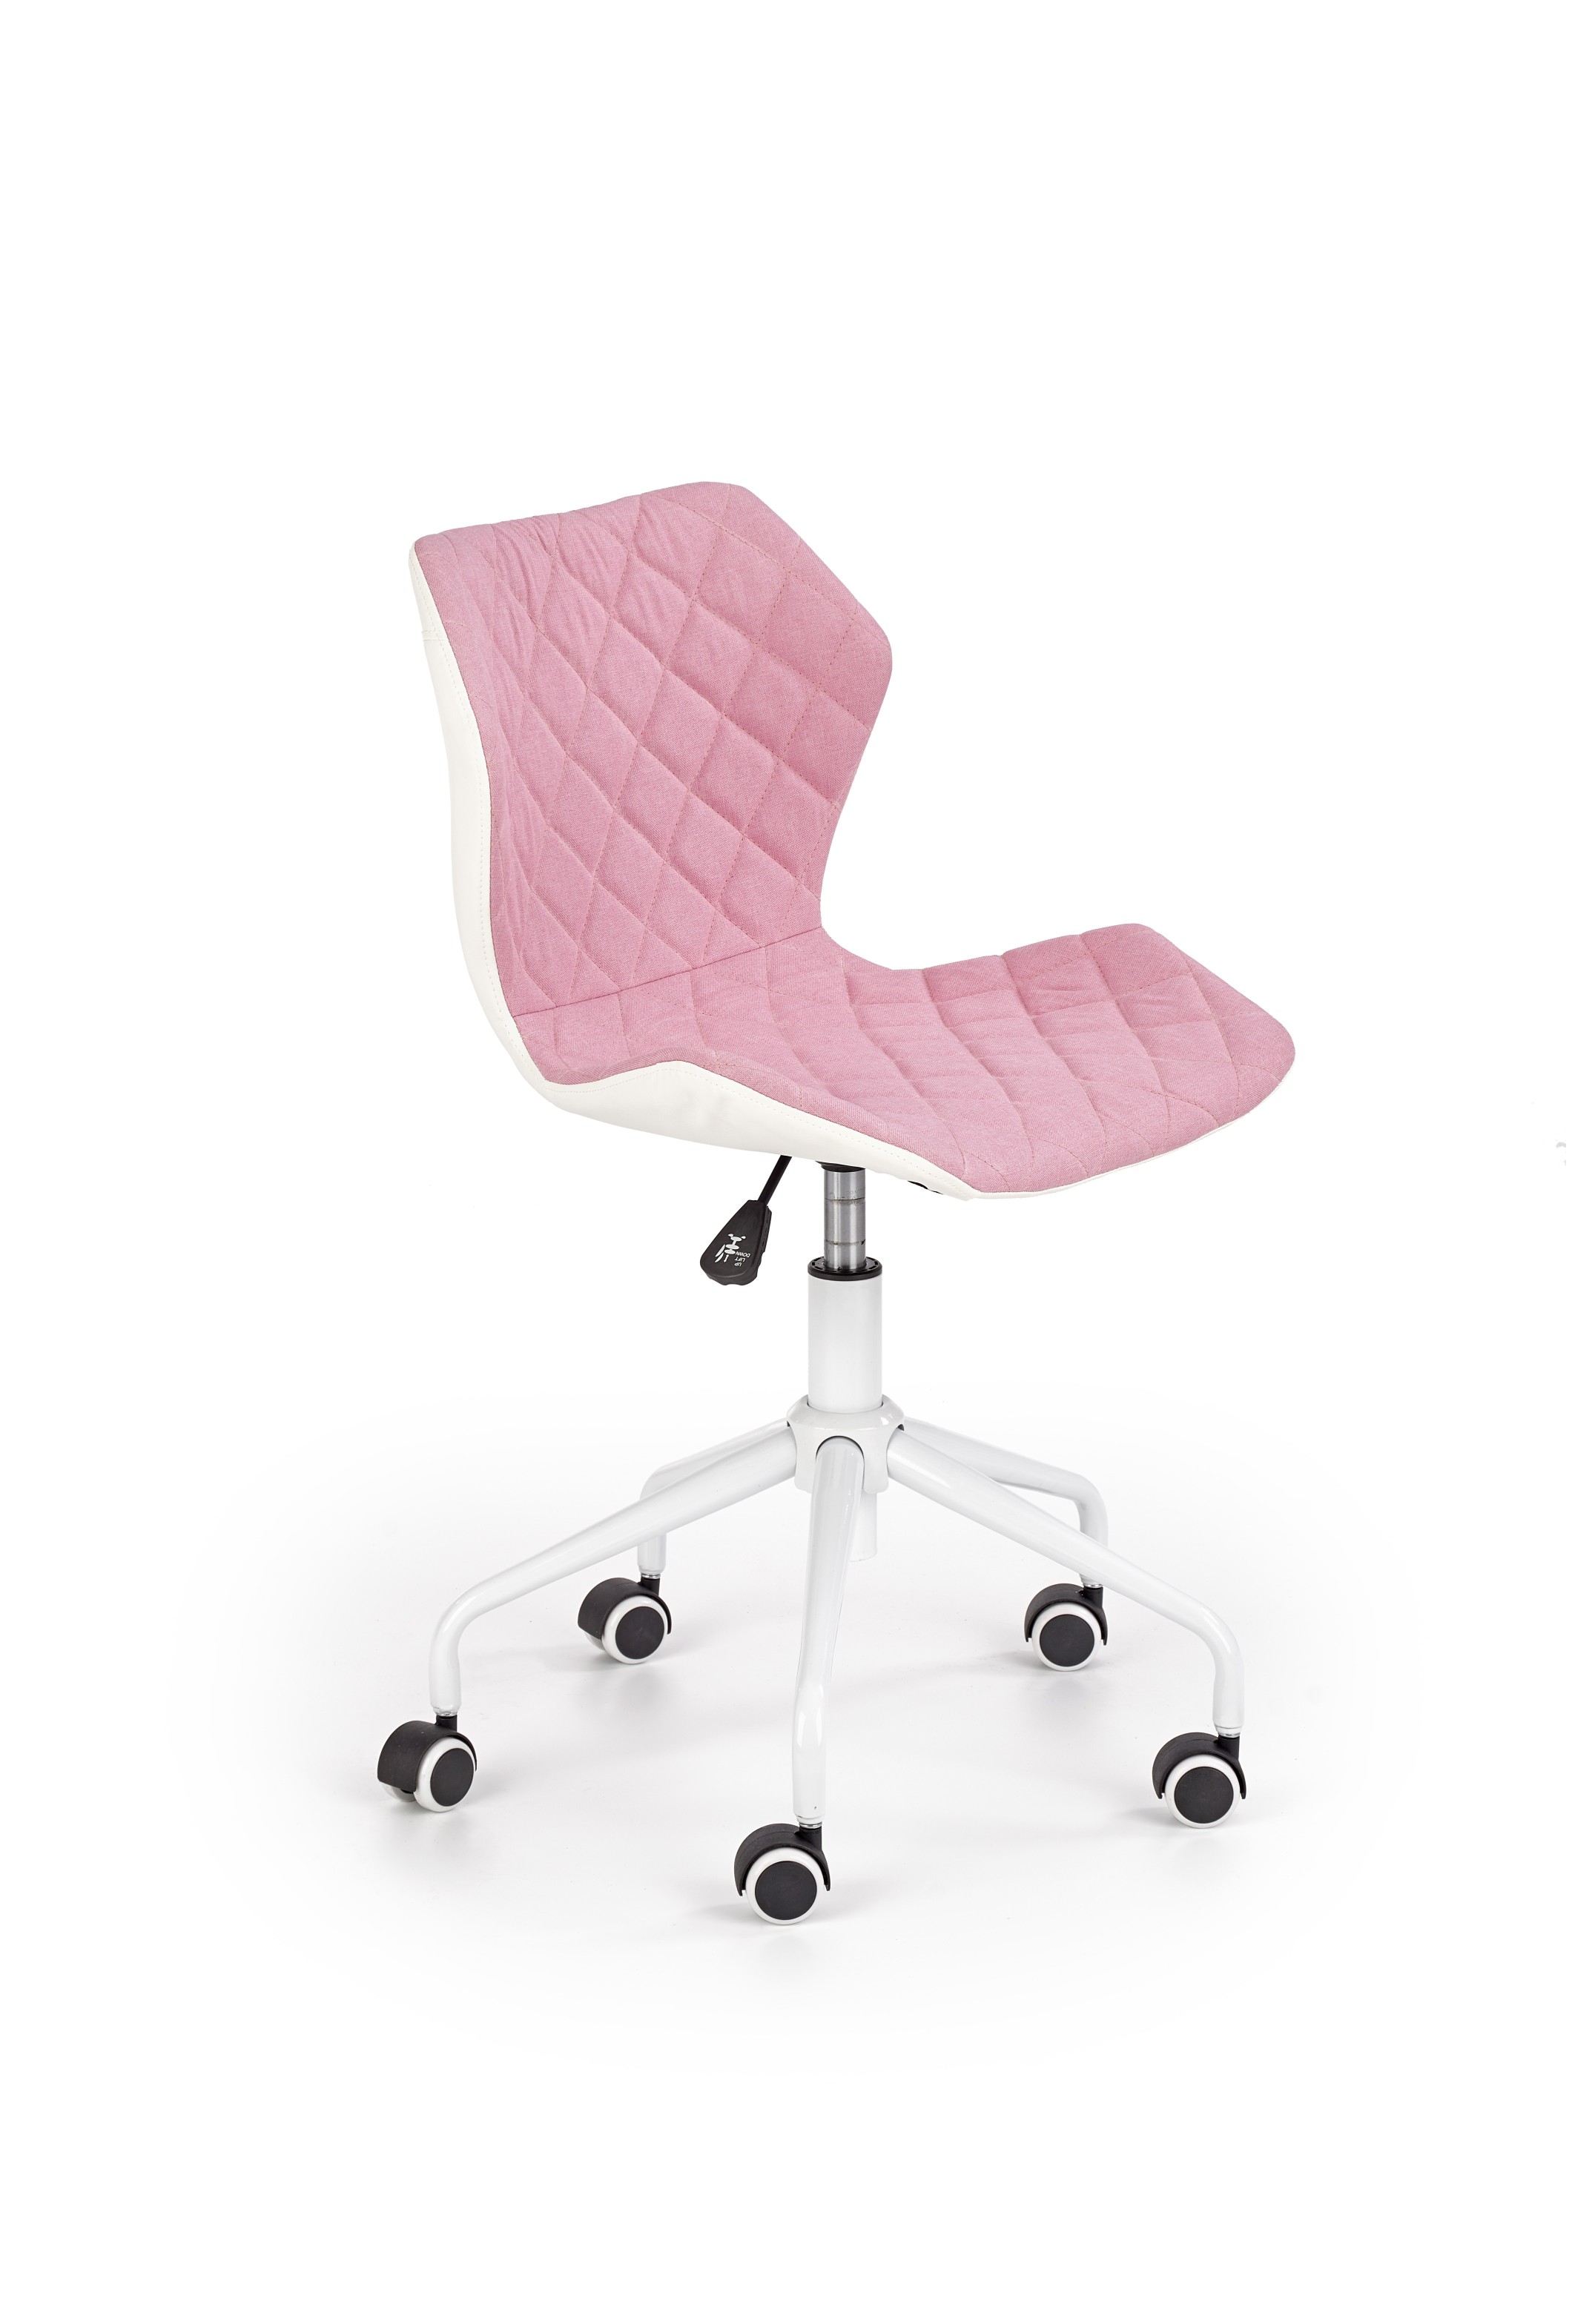 Dětská kancelářská židle MATRIX 3, růžovo-bílá